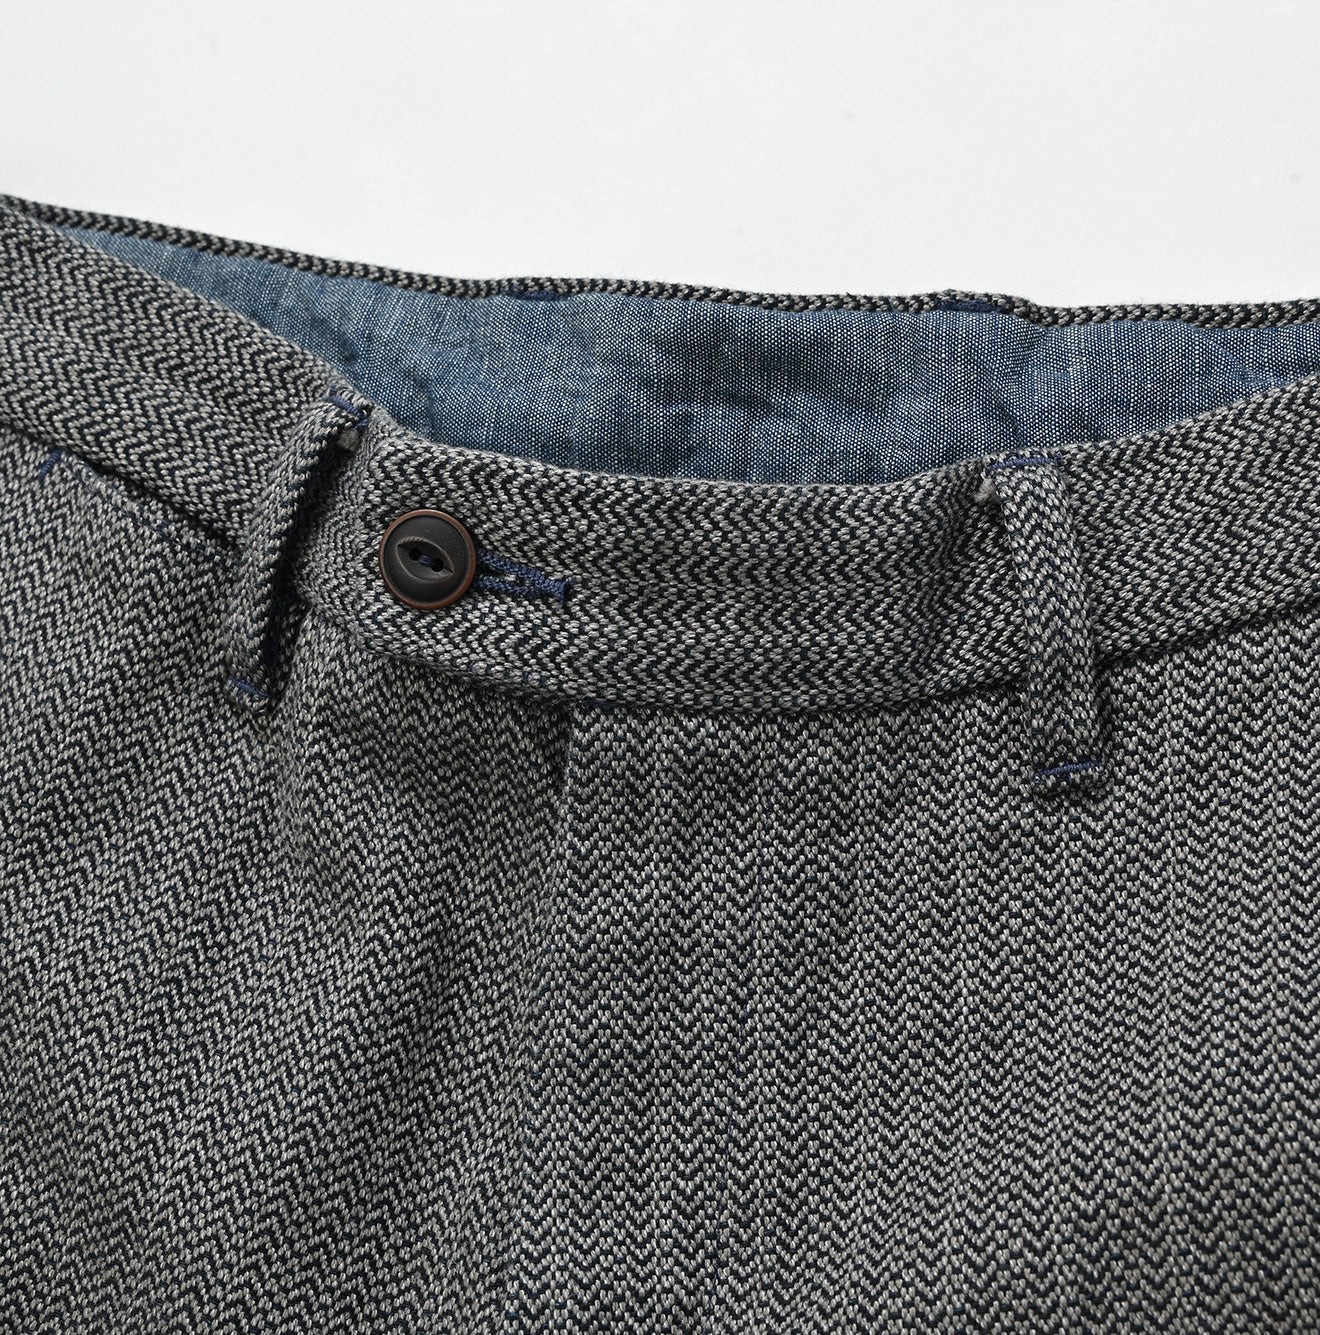 Indigo Cotton Tweed Herringbone 908 Miyuki5